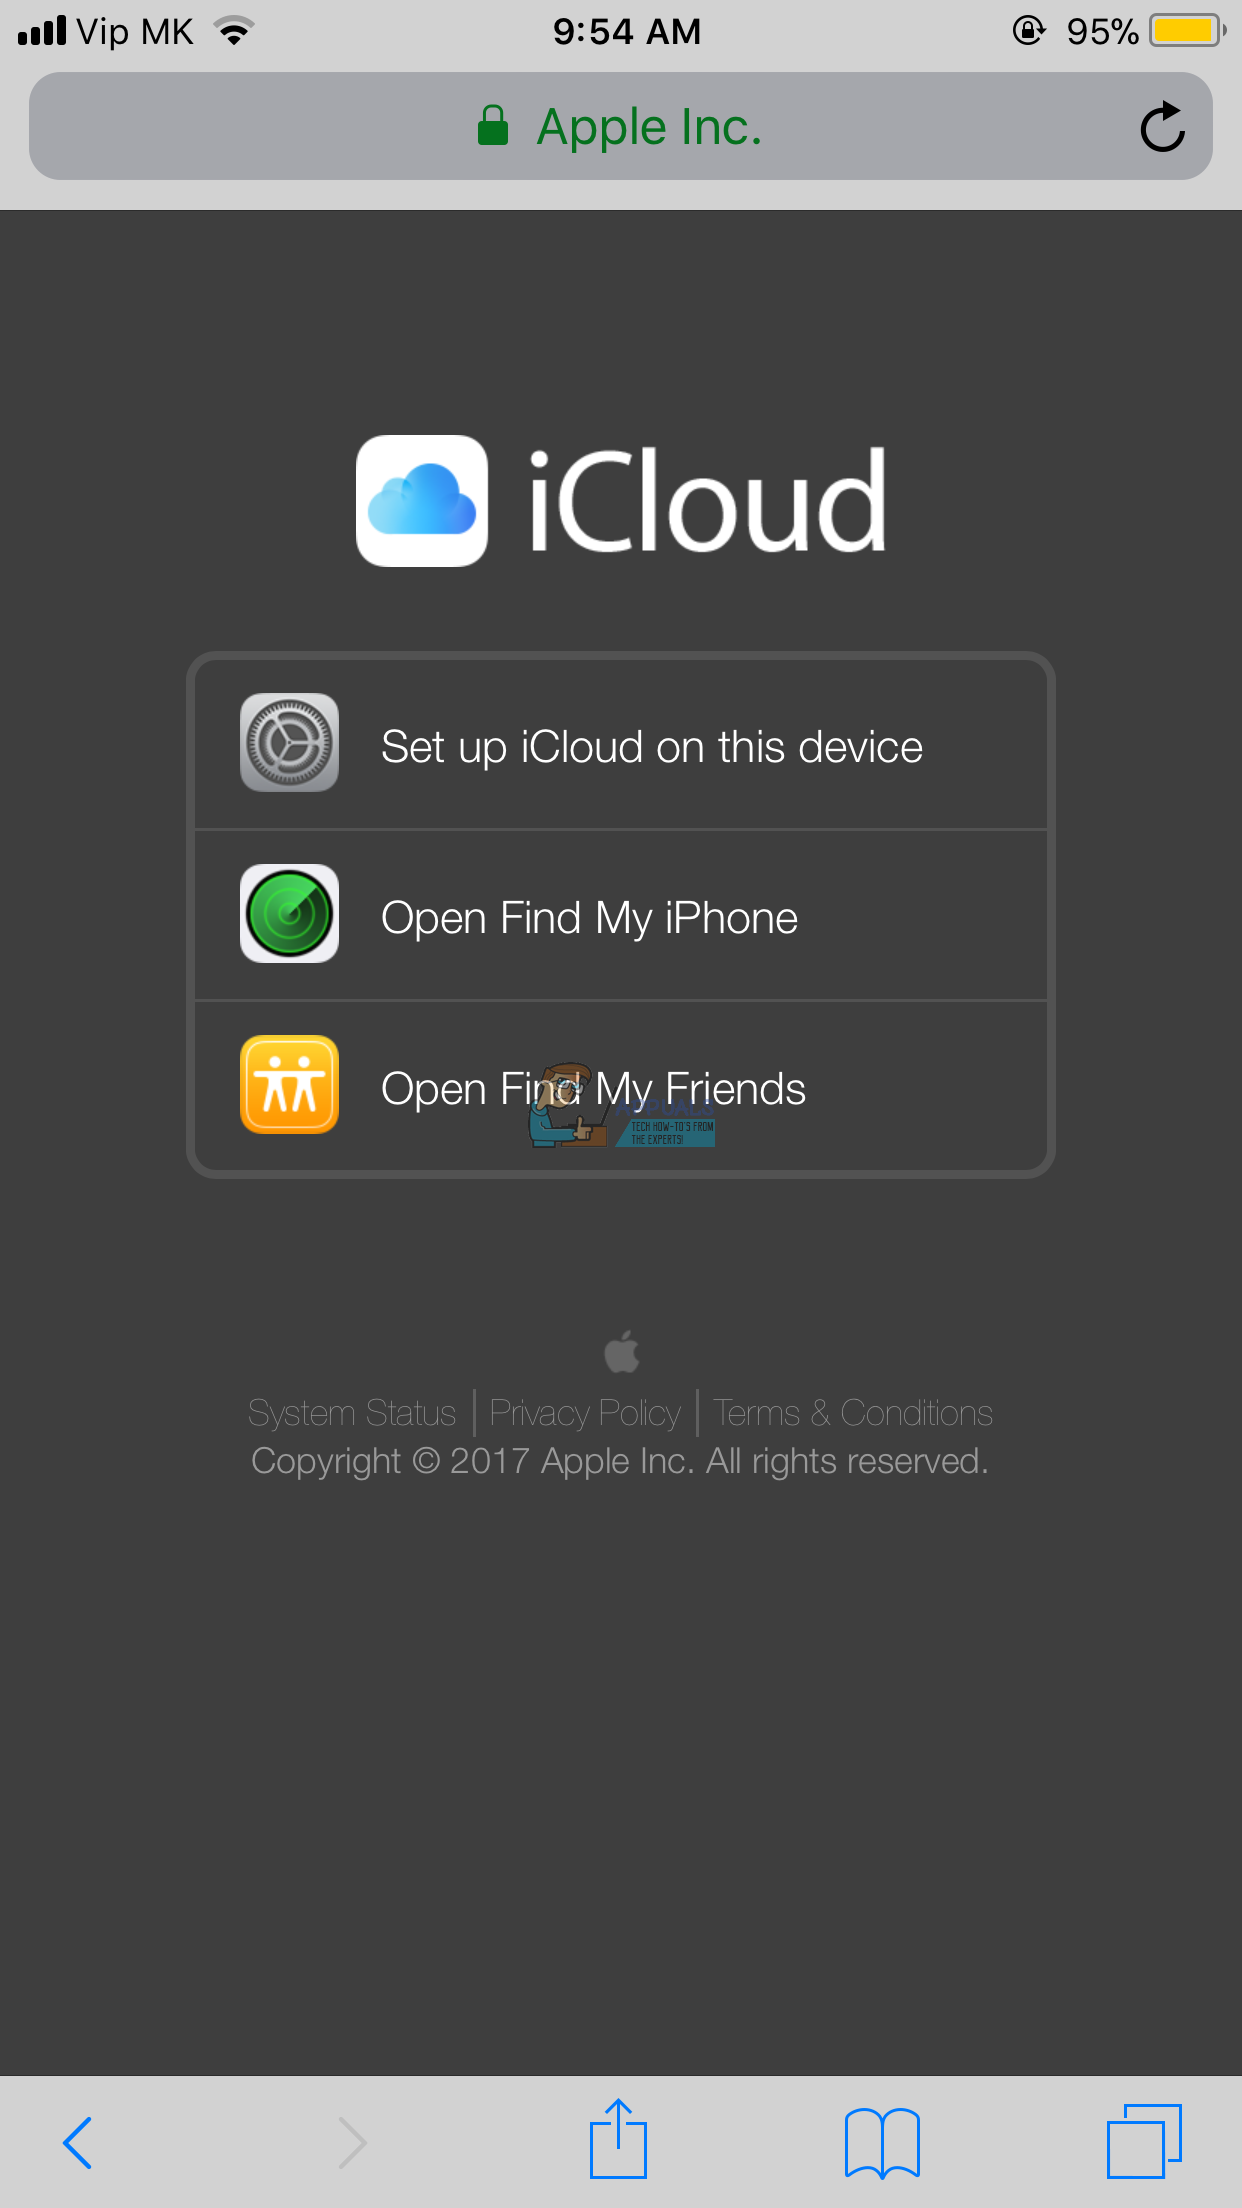 Cara Masuk ke iCloud.com Menggunakan iPhone atau iPad Anda